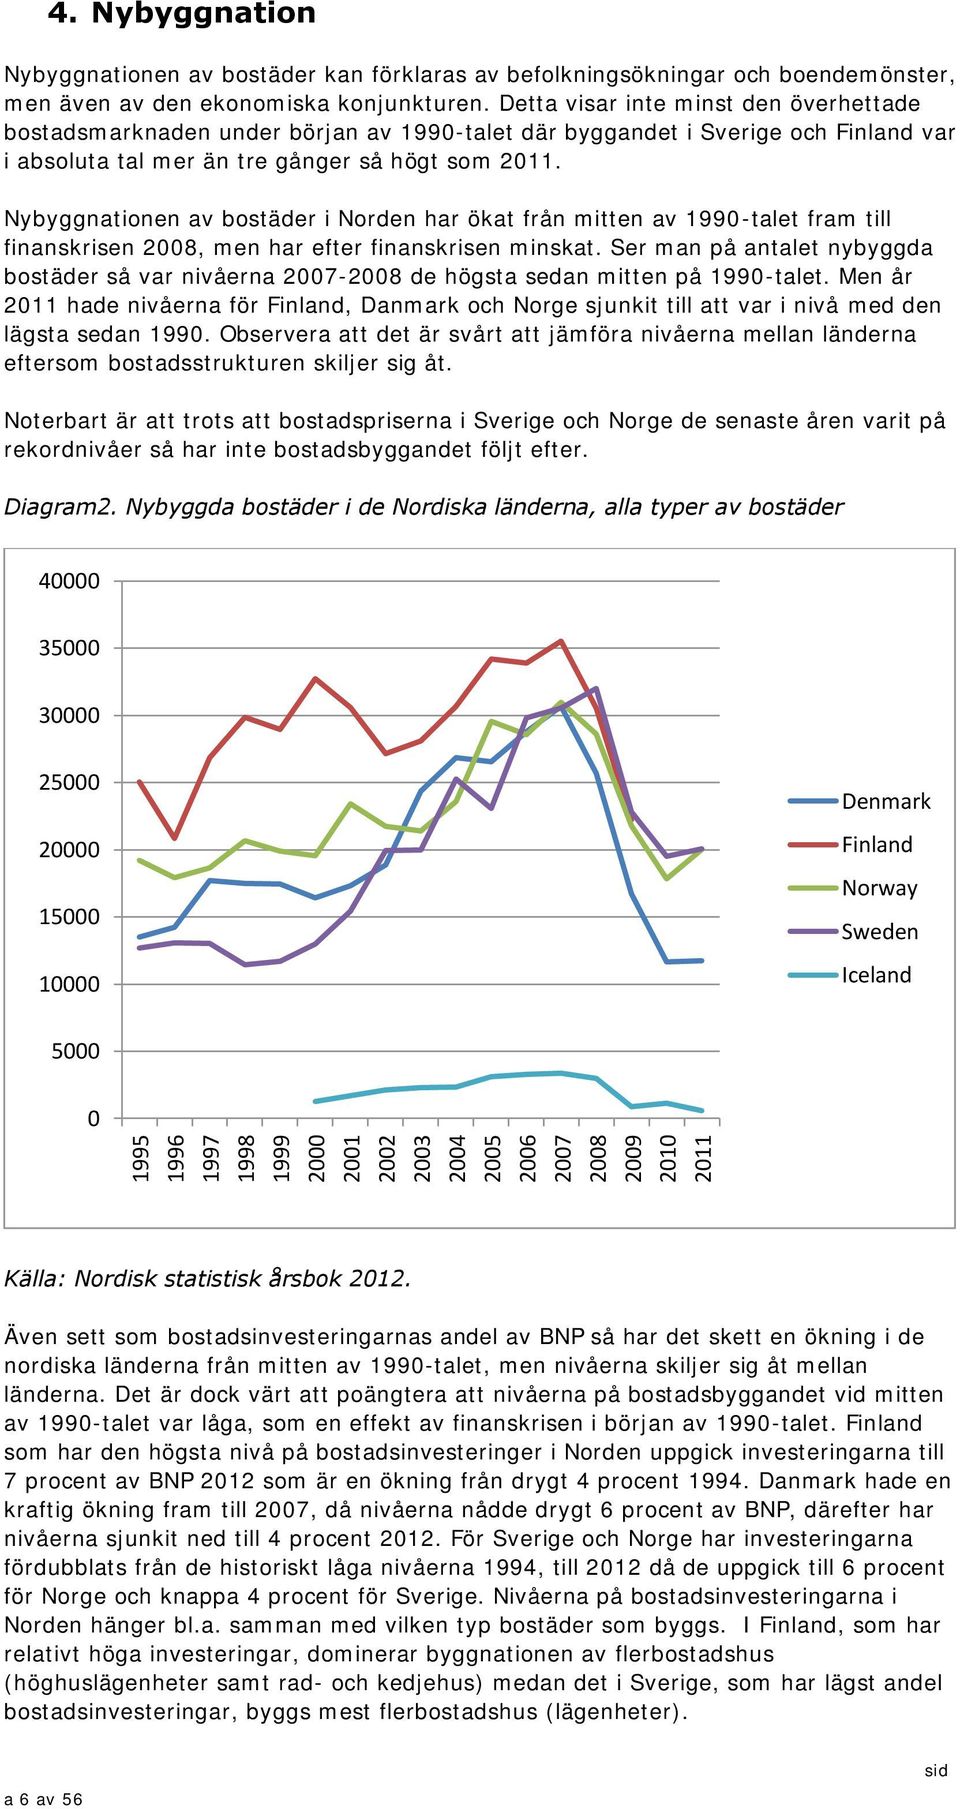 Nybyggnationen av bostäder i Norden har ökat från mitten av 199-talet fram till finanskrisen 28, men har efter finanskrisen minskat.